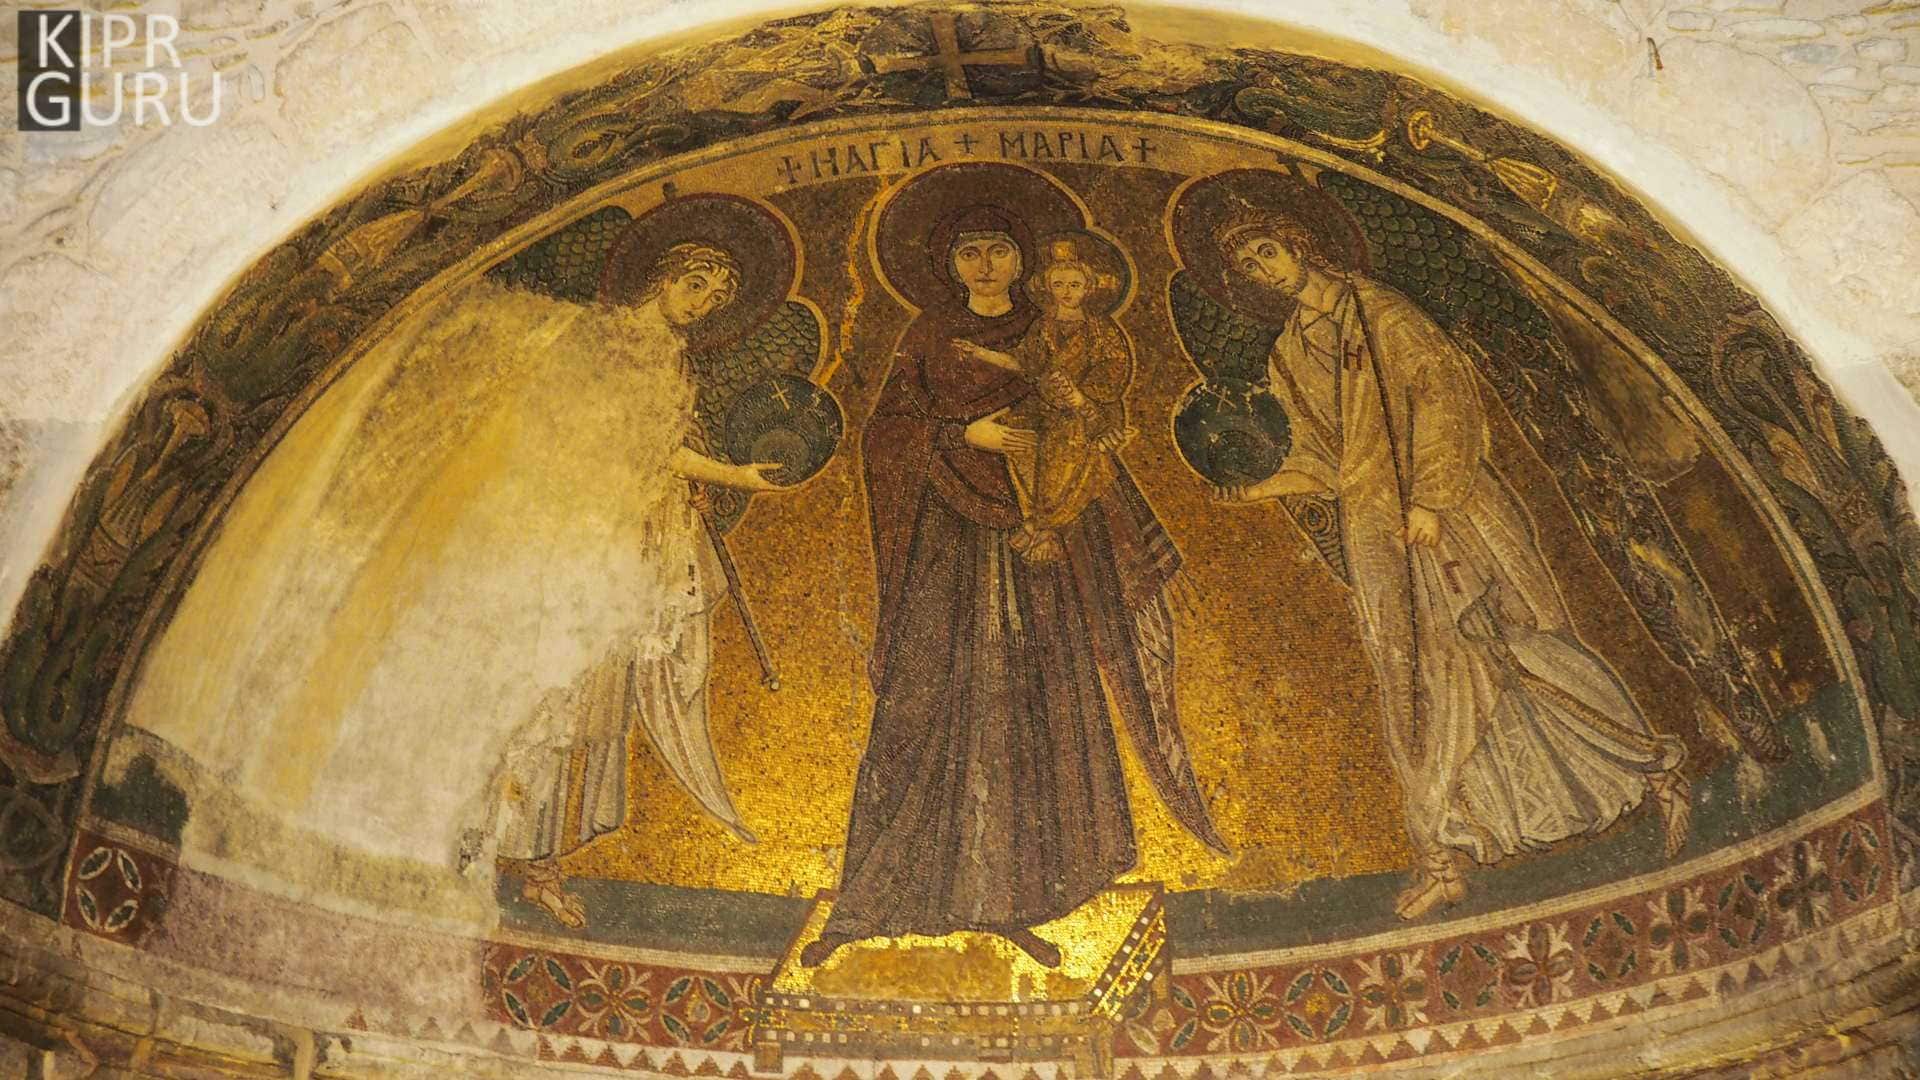 Мозаика в церкви Панагии Ангелоктисти в Кити (Кипр)